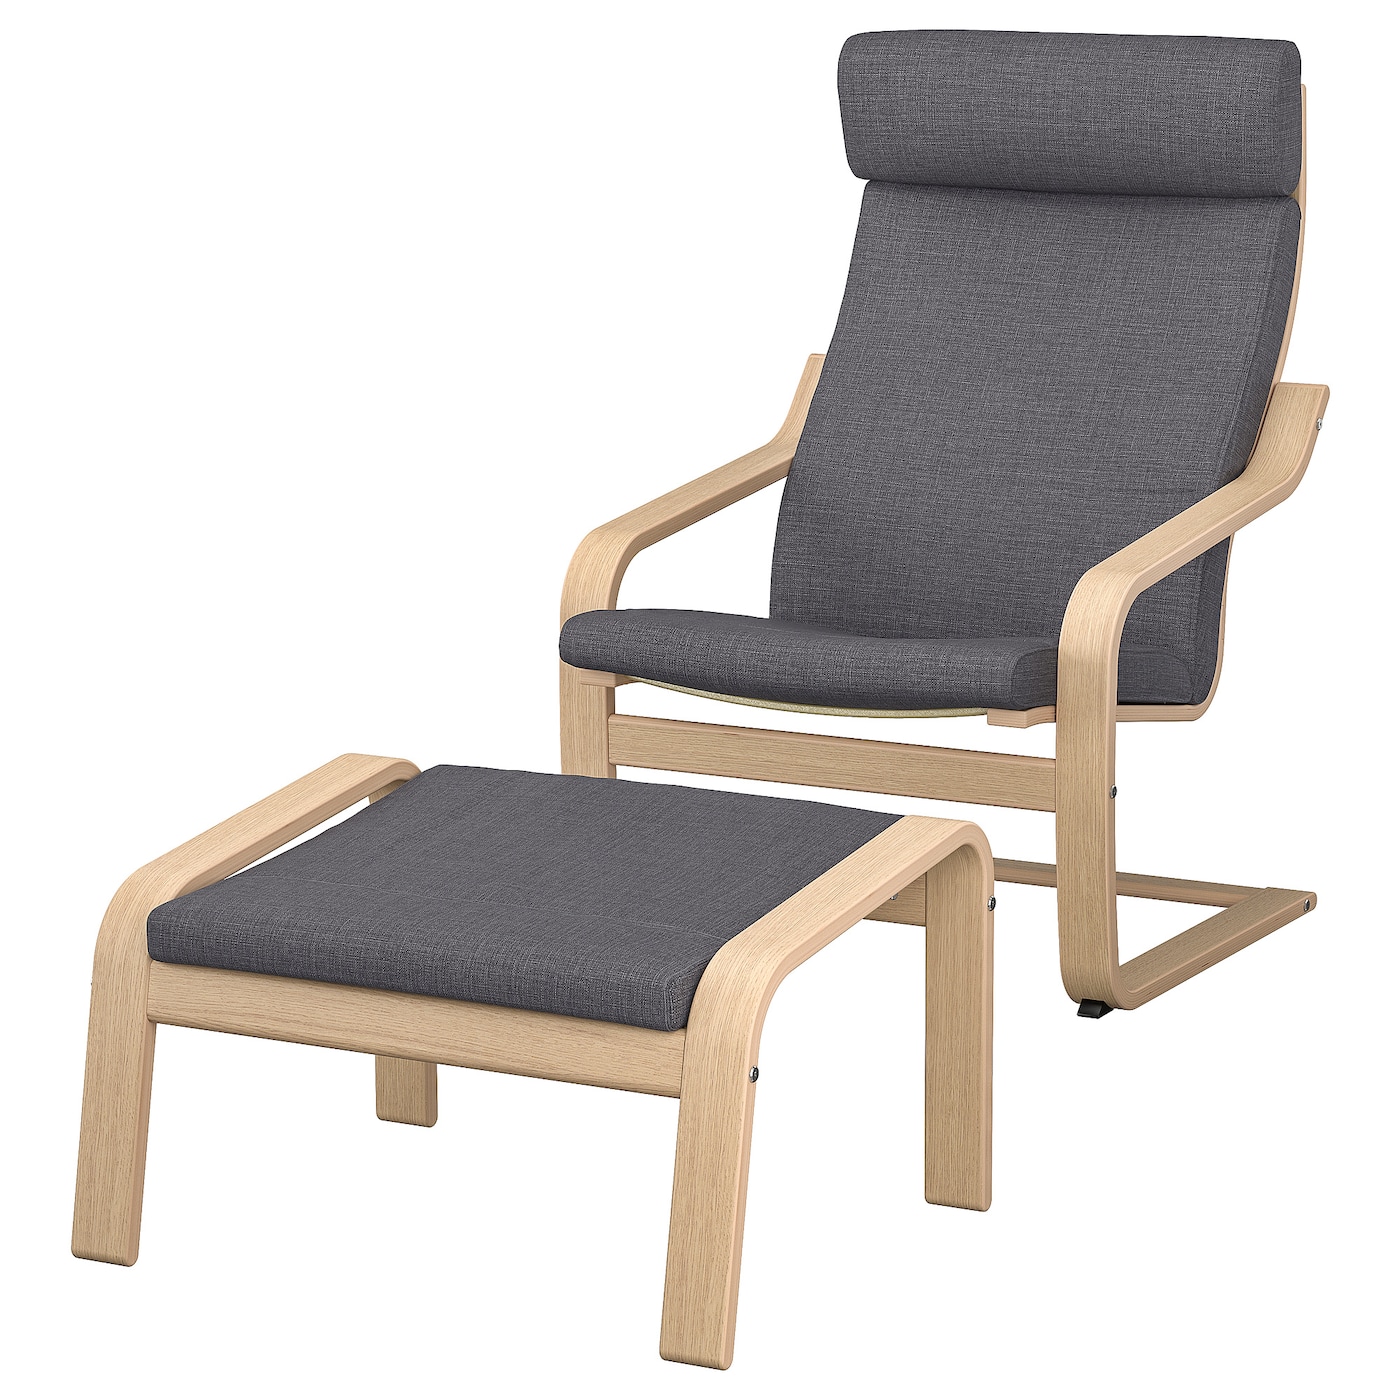 ПОЭНГ Кресло и подставка для ног, дубовый шпон светлый/Скифтебо темно-серый POÄNG IKEA